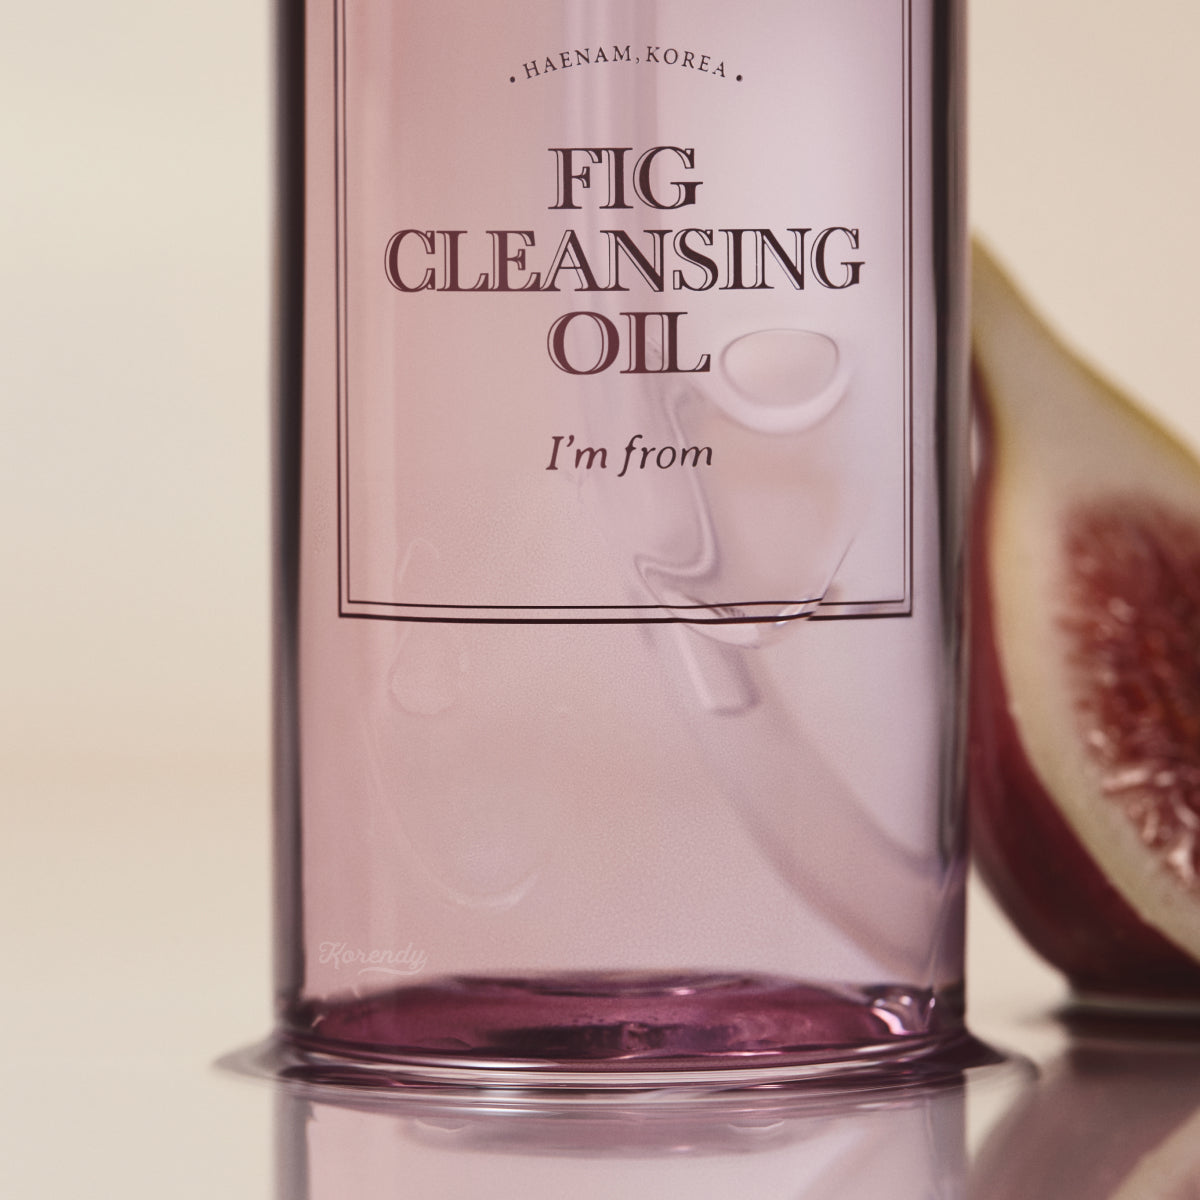 I'm From - Fig Cleansing Oil (Siyah Beyaz Noktalar için İncir Enzimli Temizleyici Yağ) 200ml